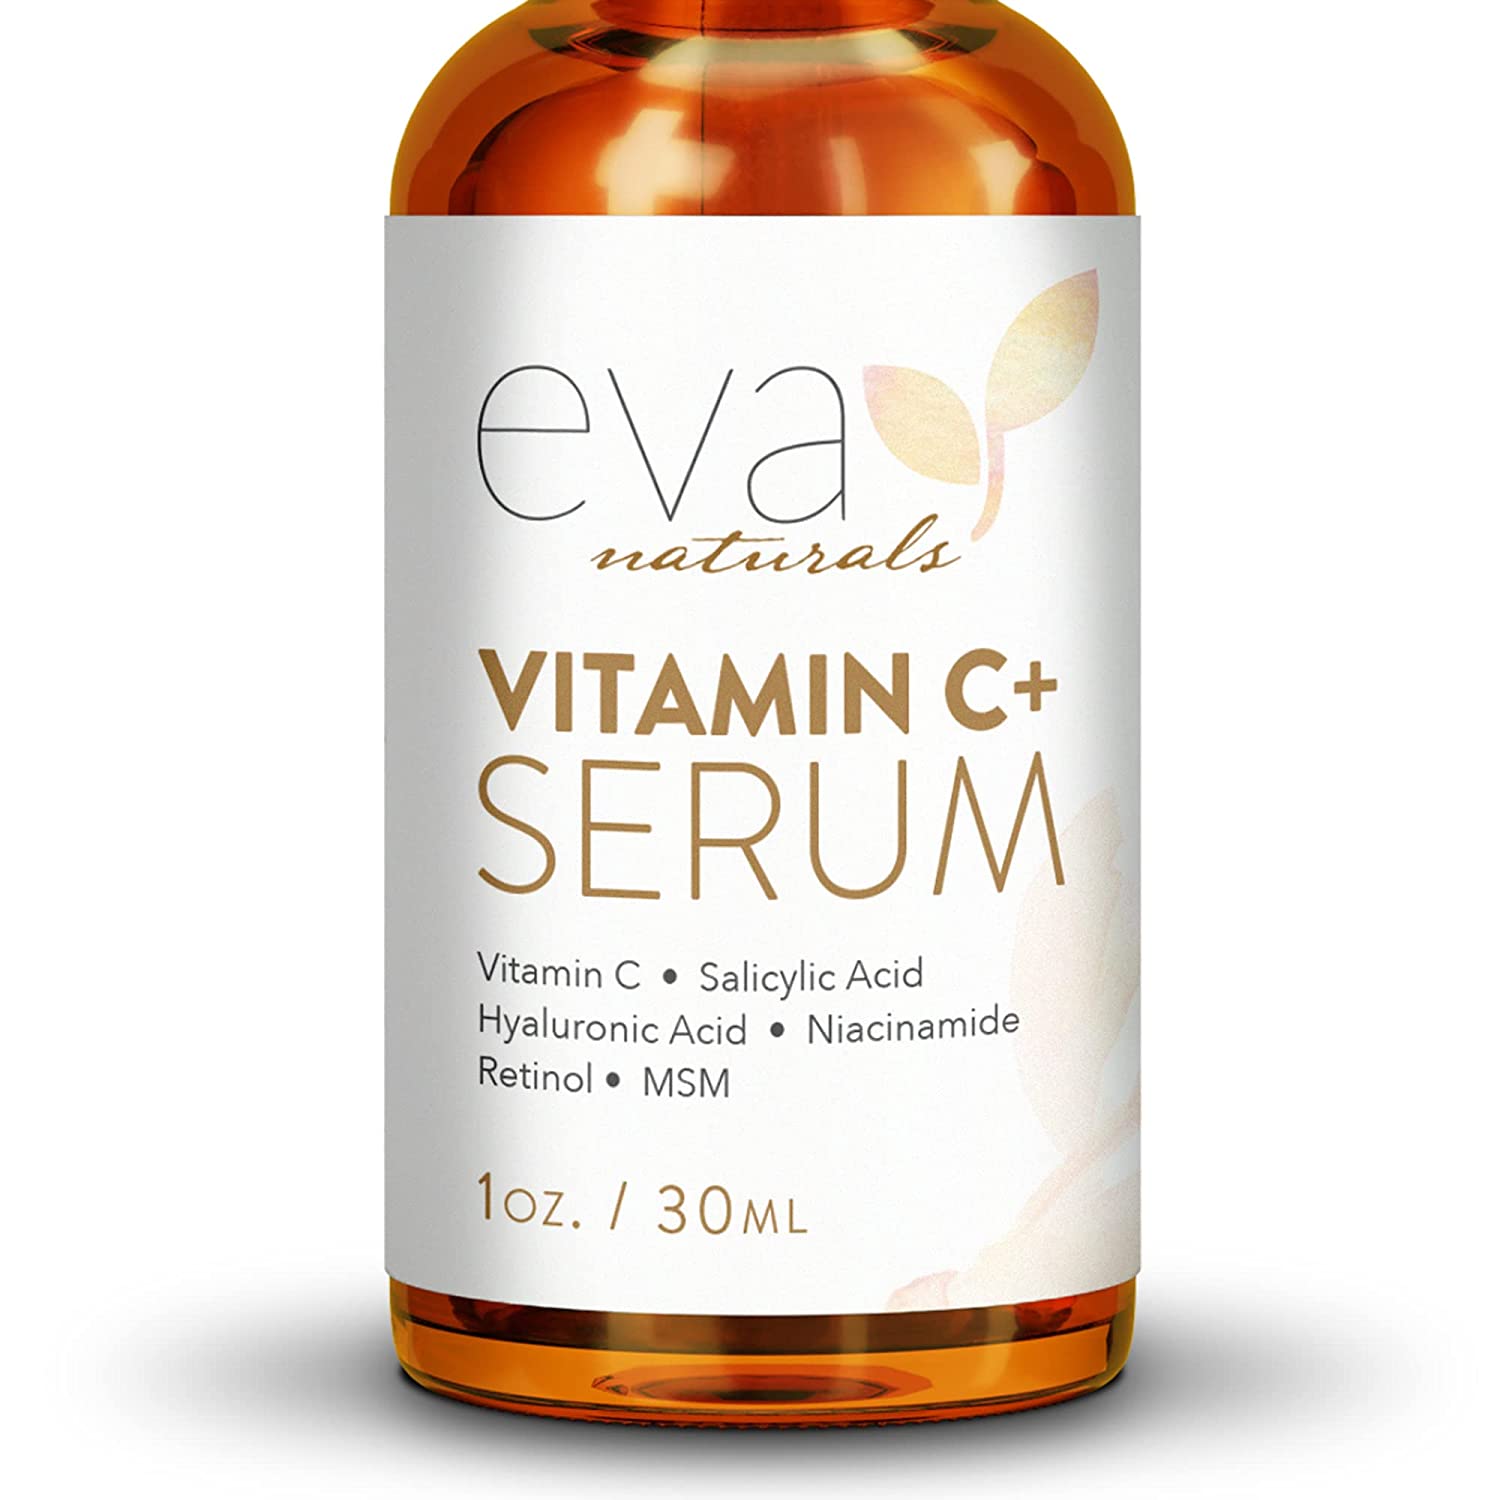 Eva Naturals Vitamin C Serum